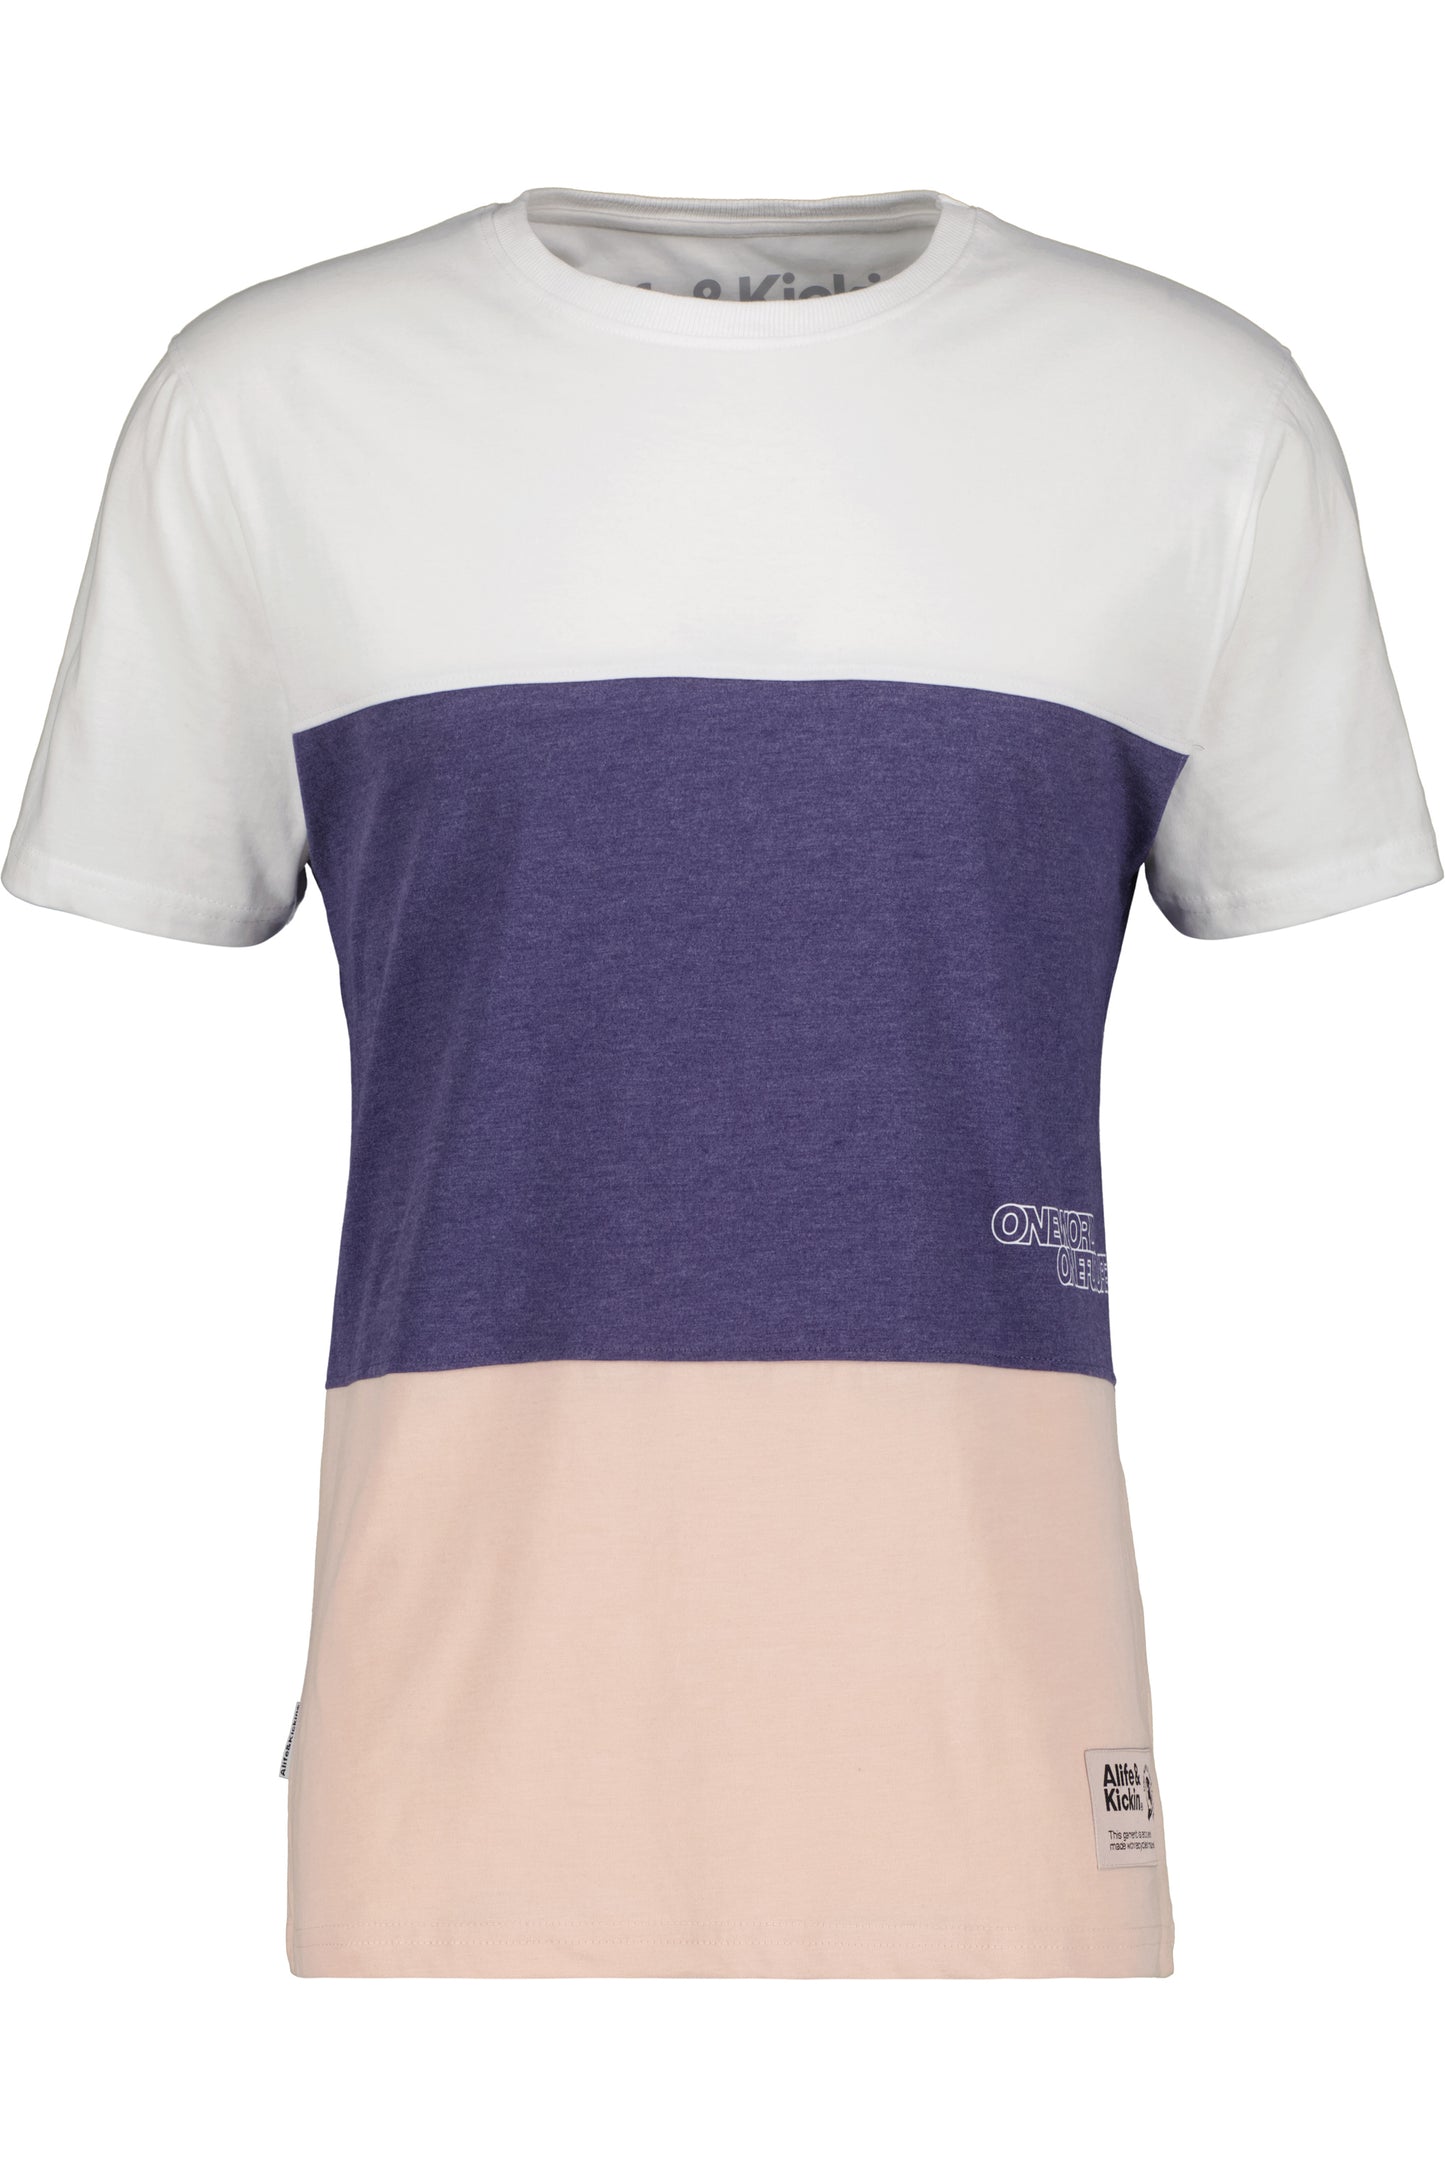 Vielseitiger Begleiter - BenAK A T-Shirt für Herren in weicher Jerseyqualität Rosa